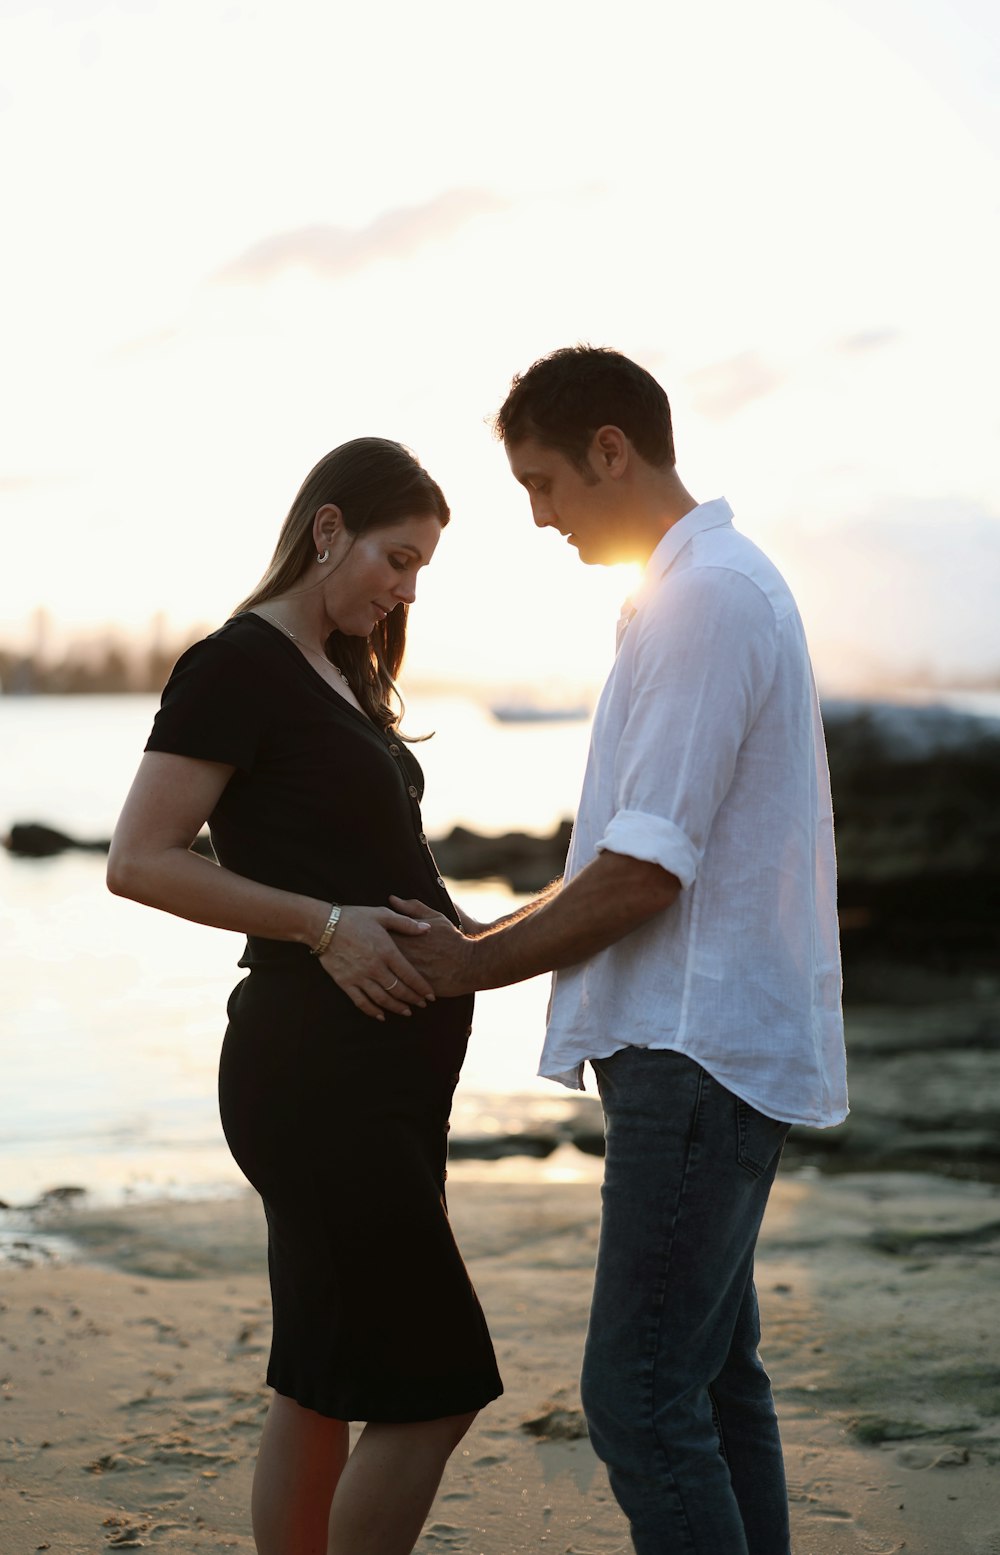 Una donna incinta in piedi accanto a un uomo su una spiaggia